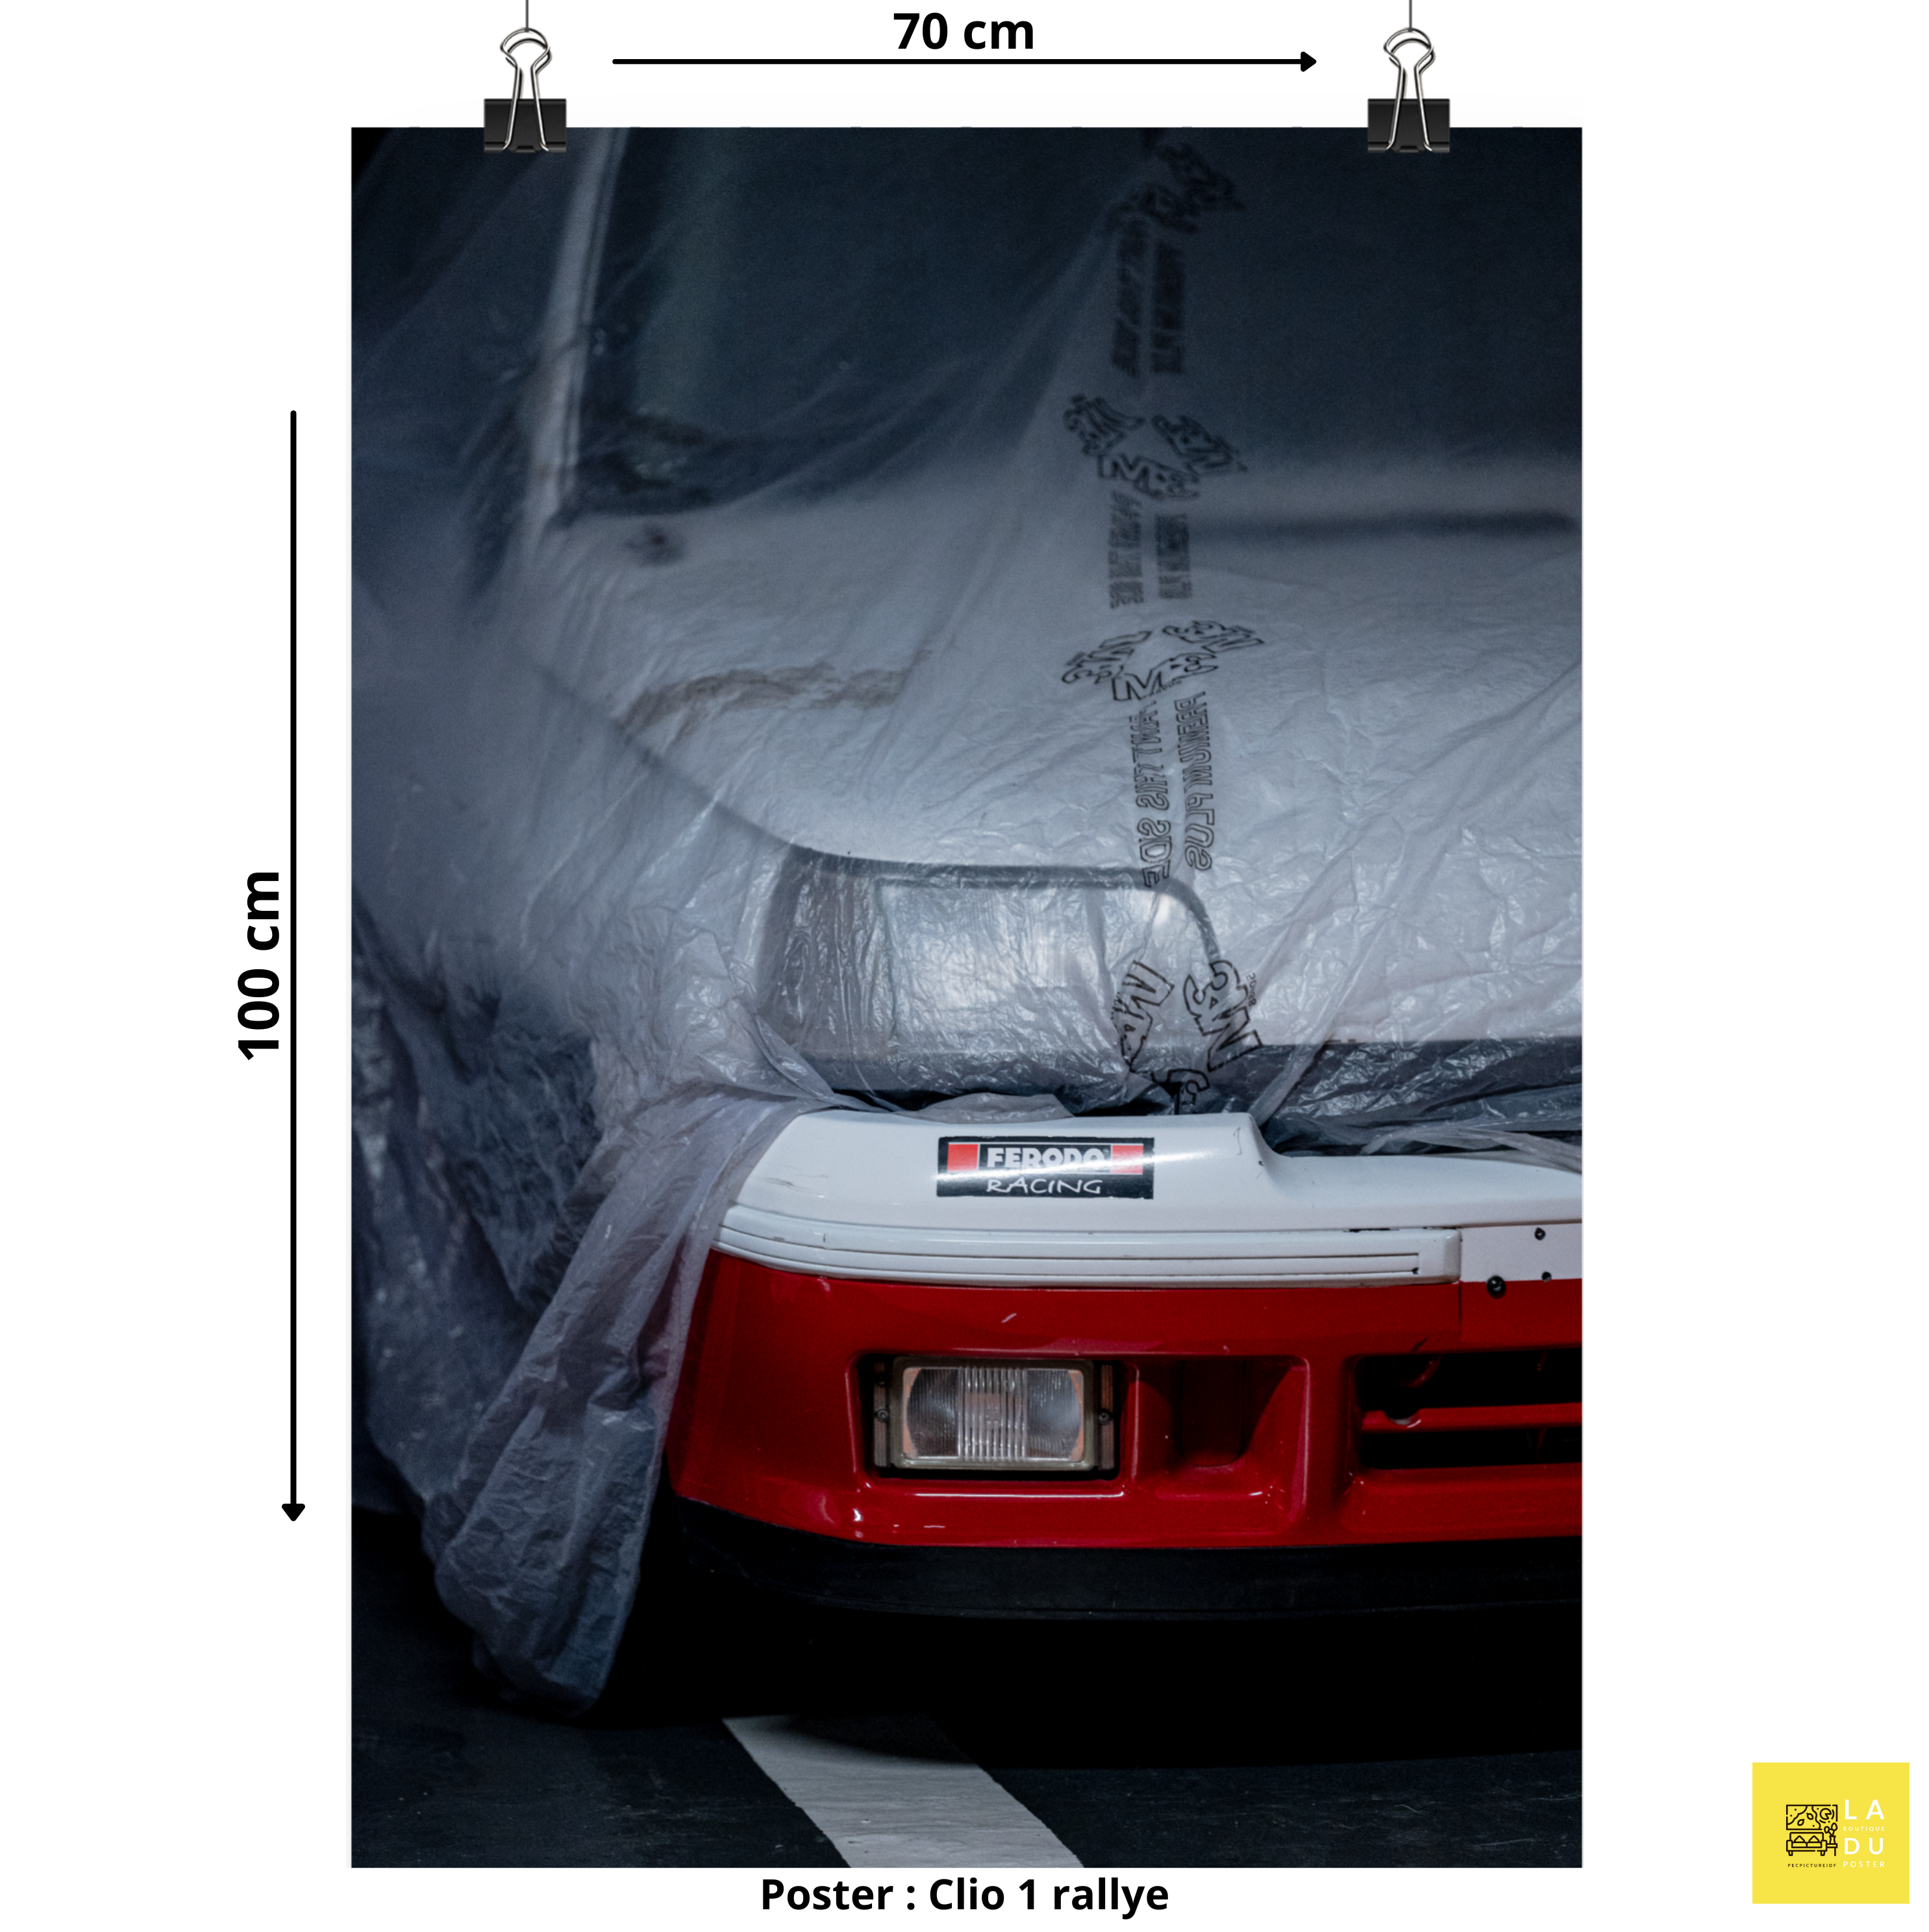 Clio 1 rallye - Poster - La boutique du poster Français